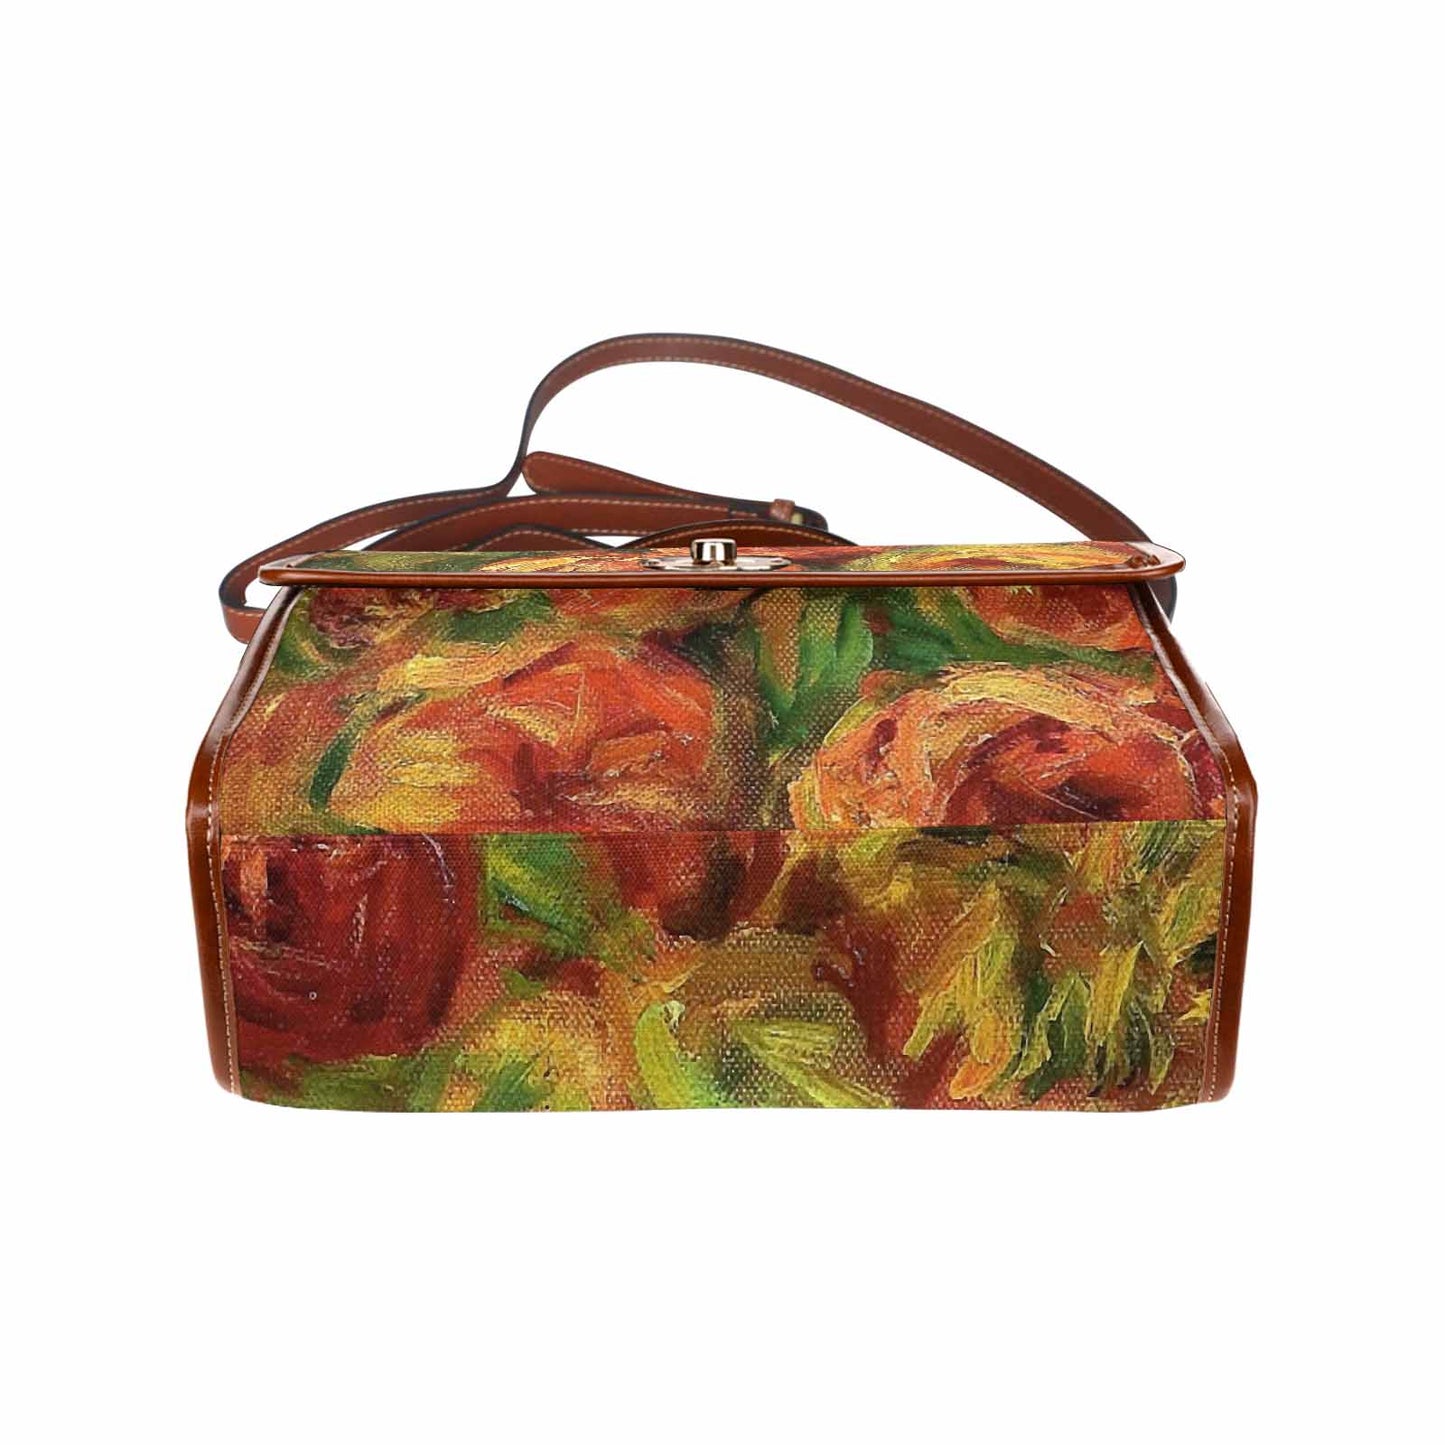 Vintage Floral Handbag, Design 18 Model 1695341 C20